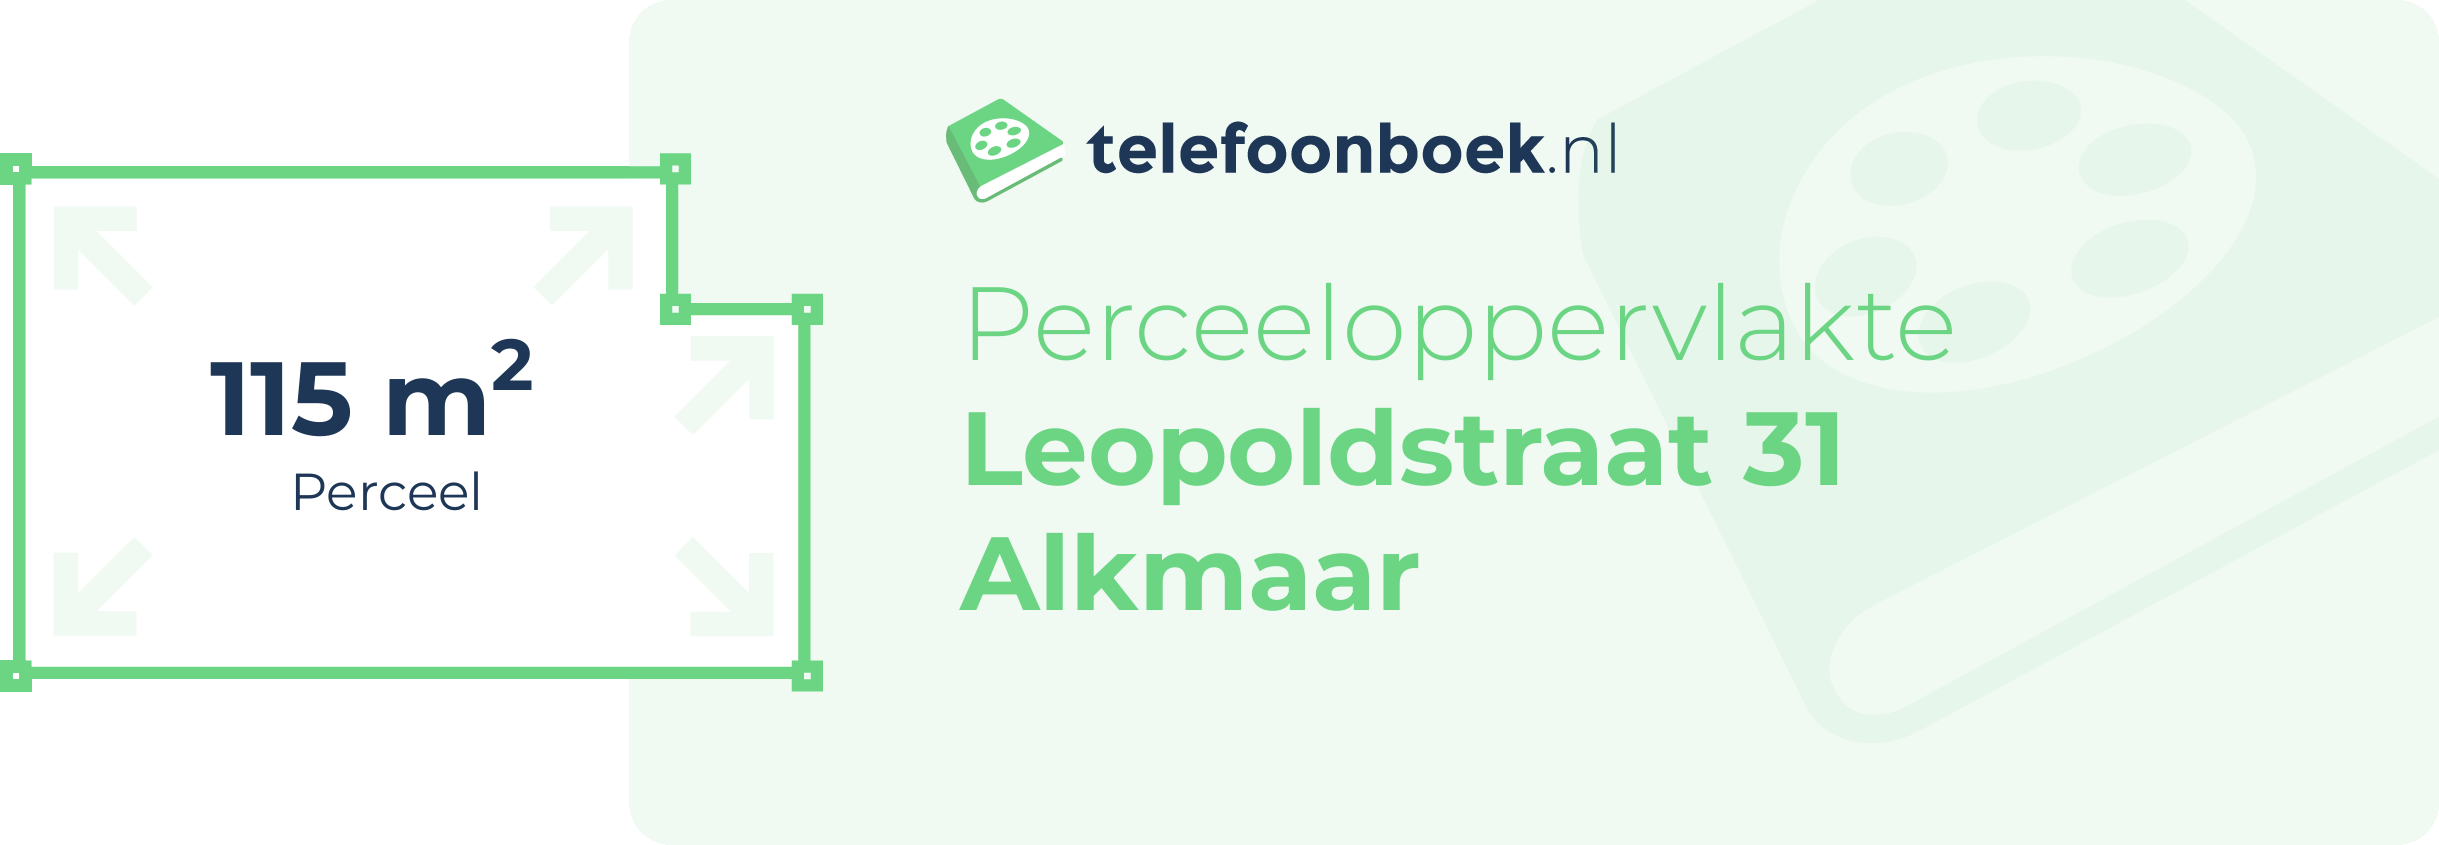 Perceeloppervlakte Leopoldstraat 31 Alkmaar